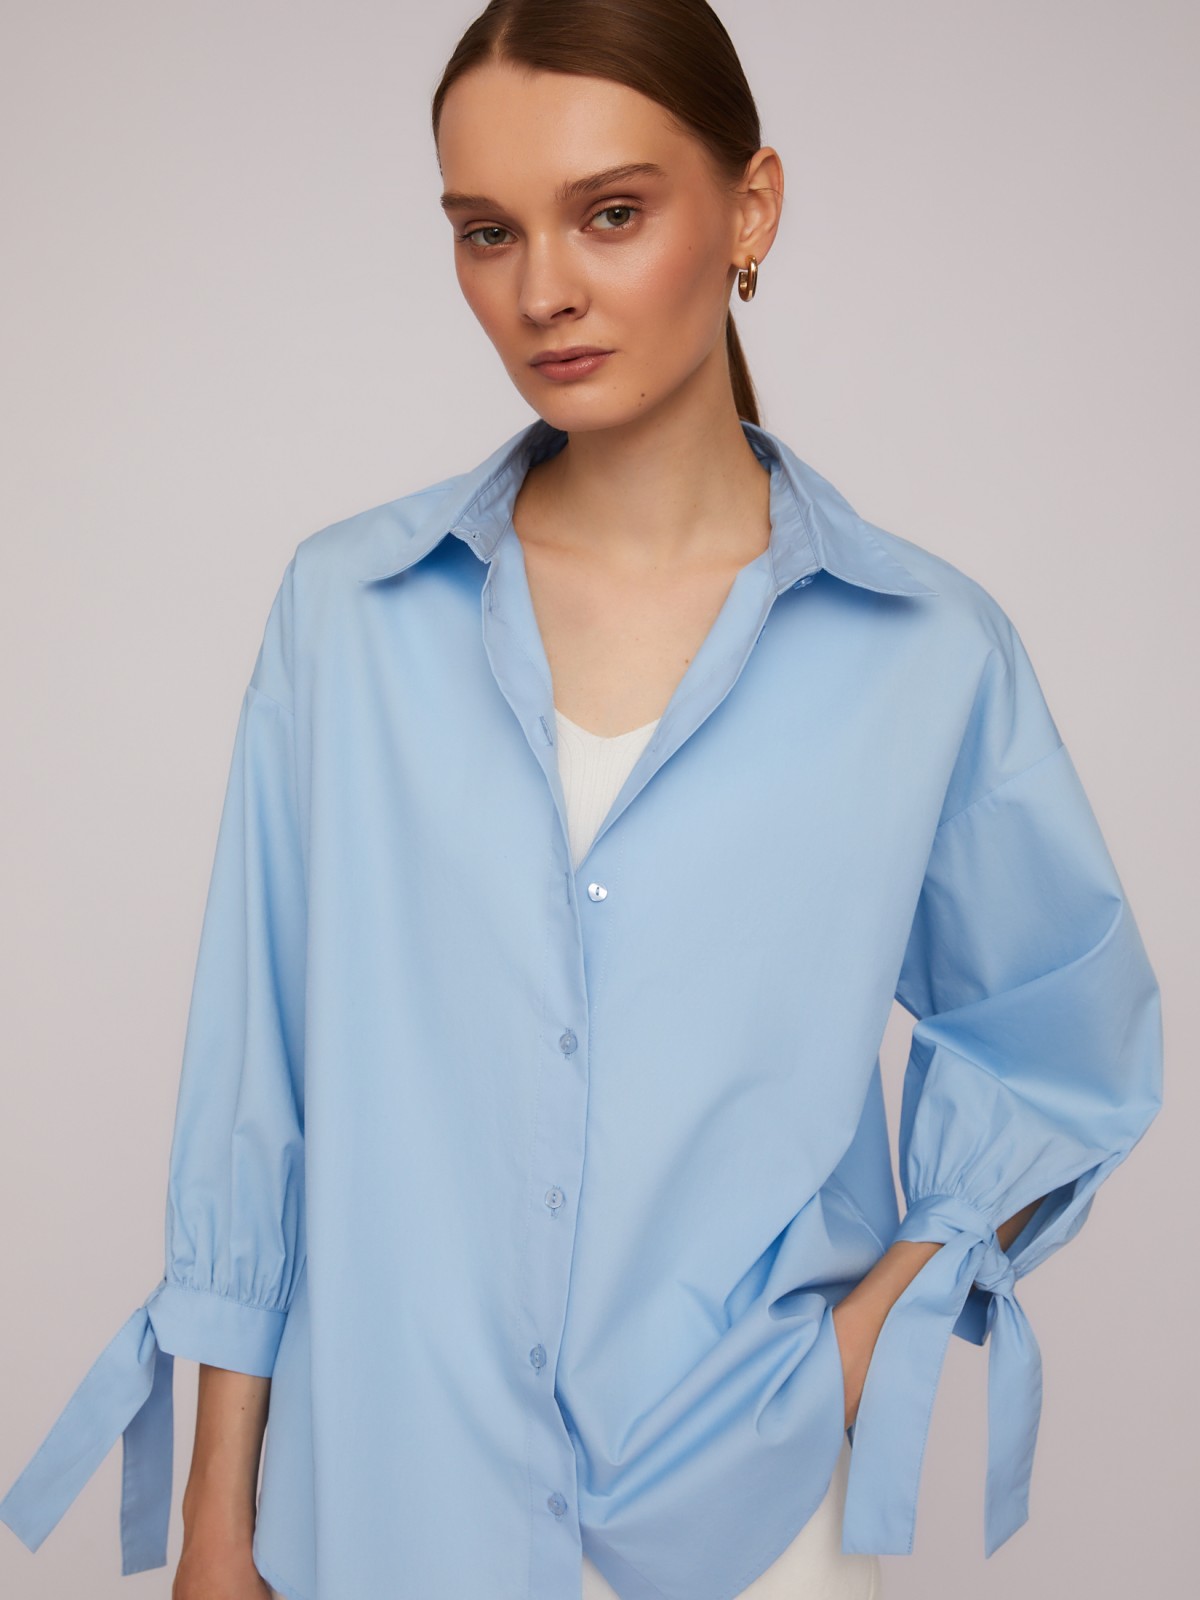 Рубашка из хлопка оверсайз силуэта с акцентными манжетами zolla 024211159033, цвет голубой, размер M - фото 3